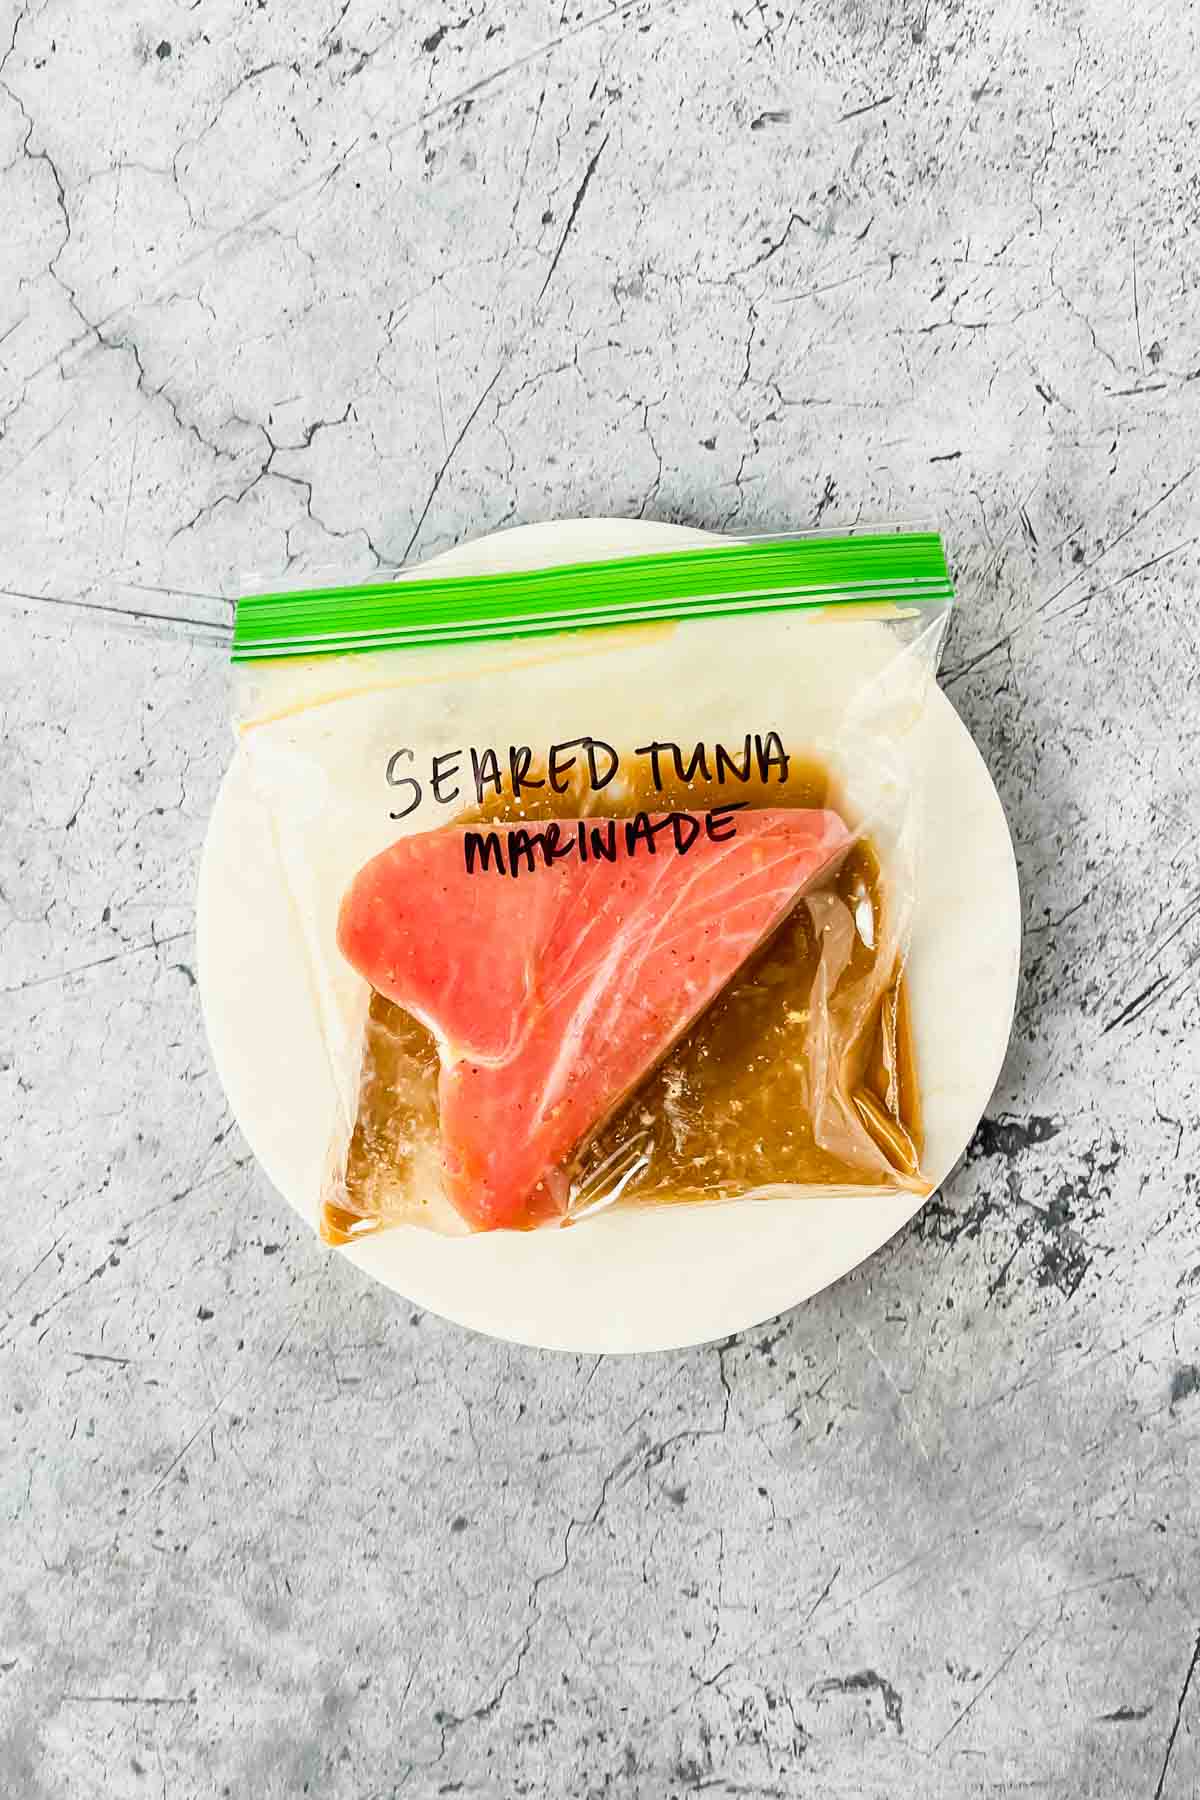 raw ahi tuna marinating in sauce in ziplock bag.